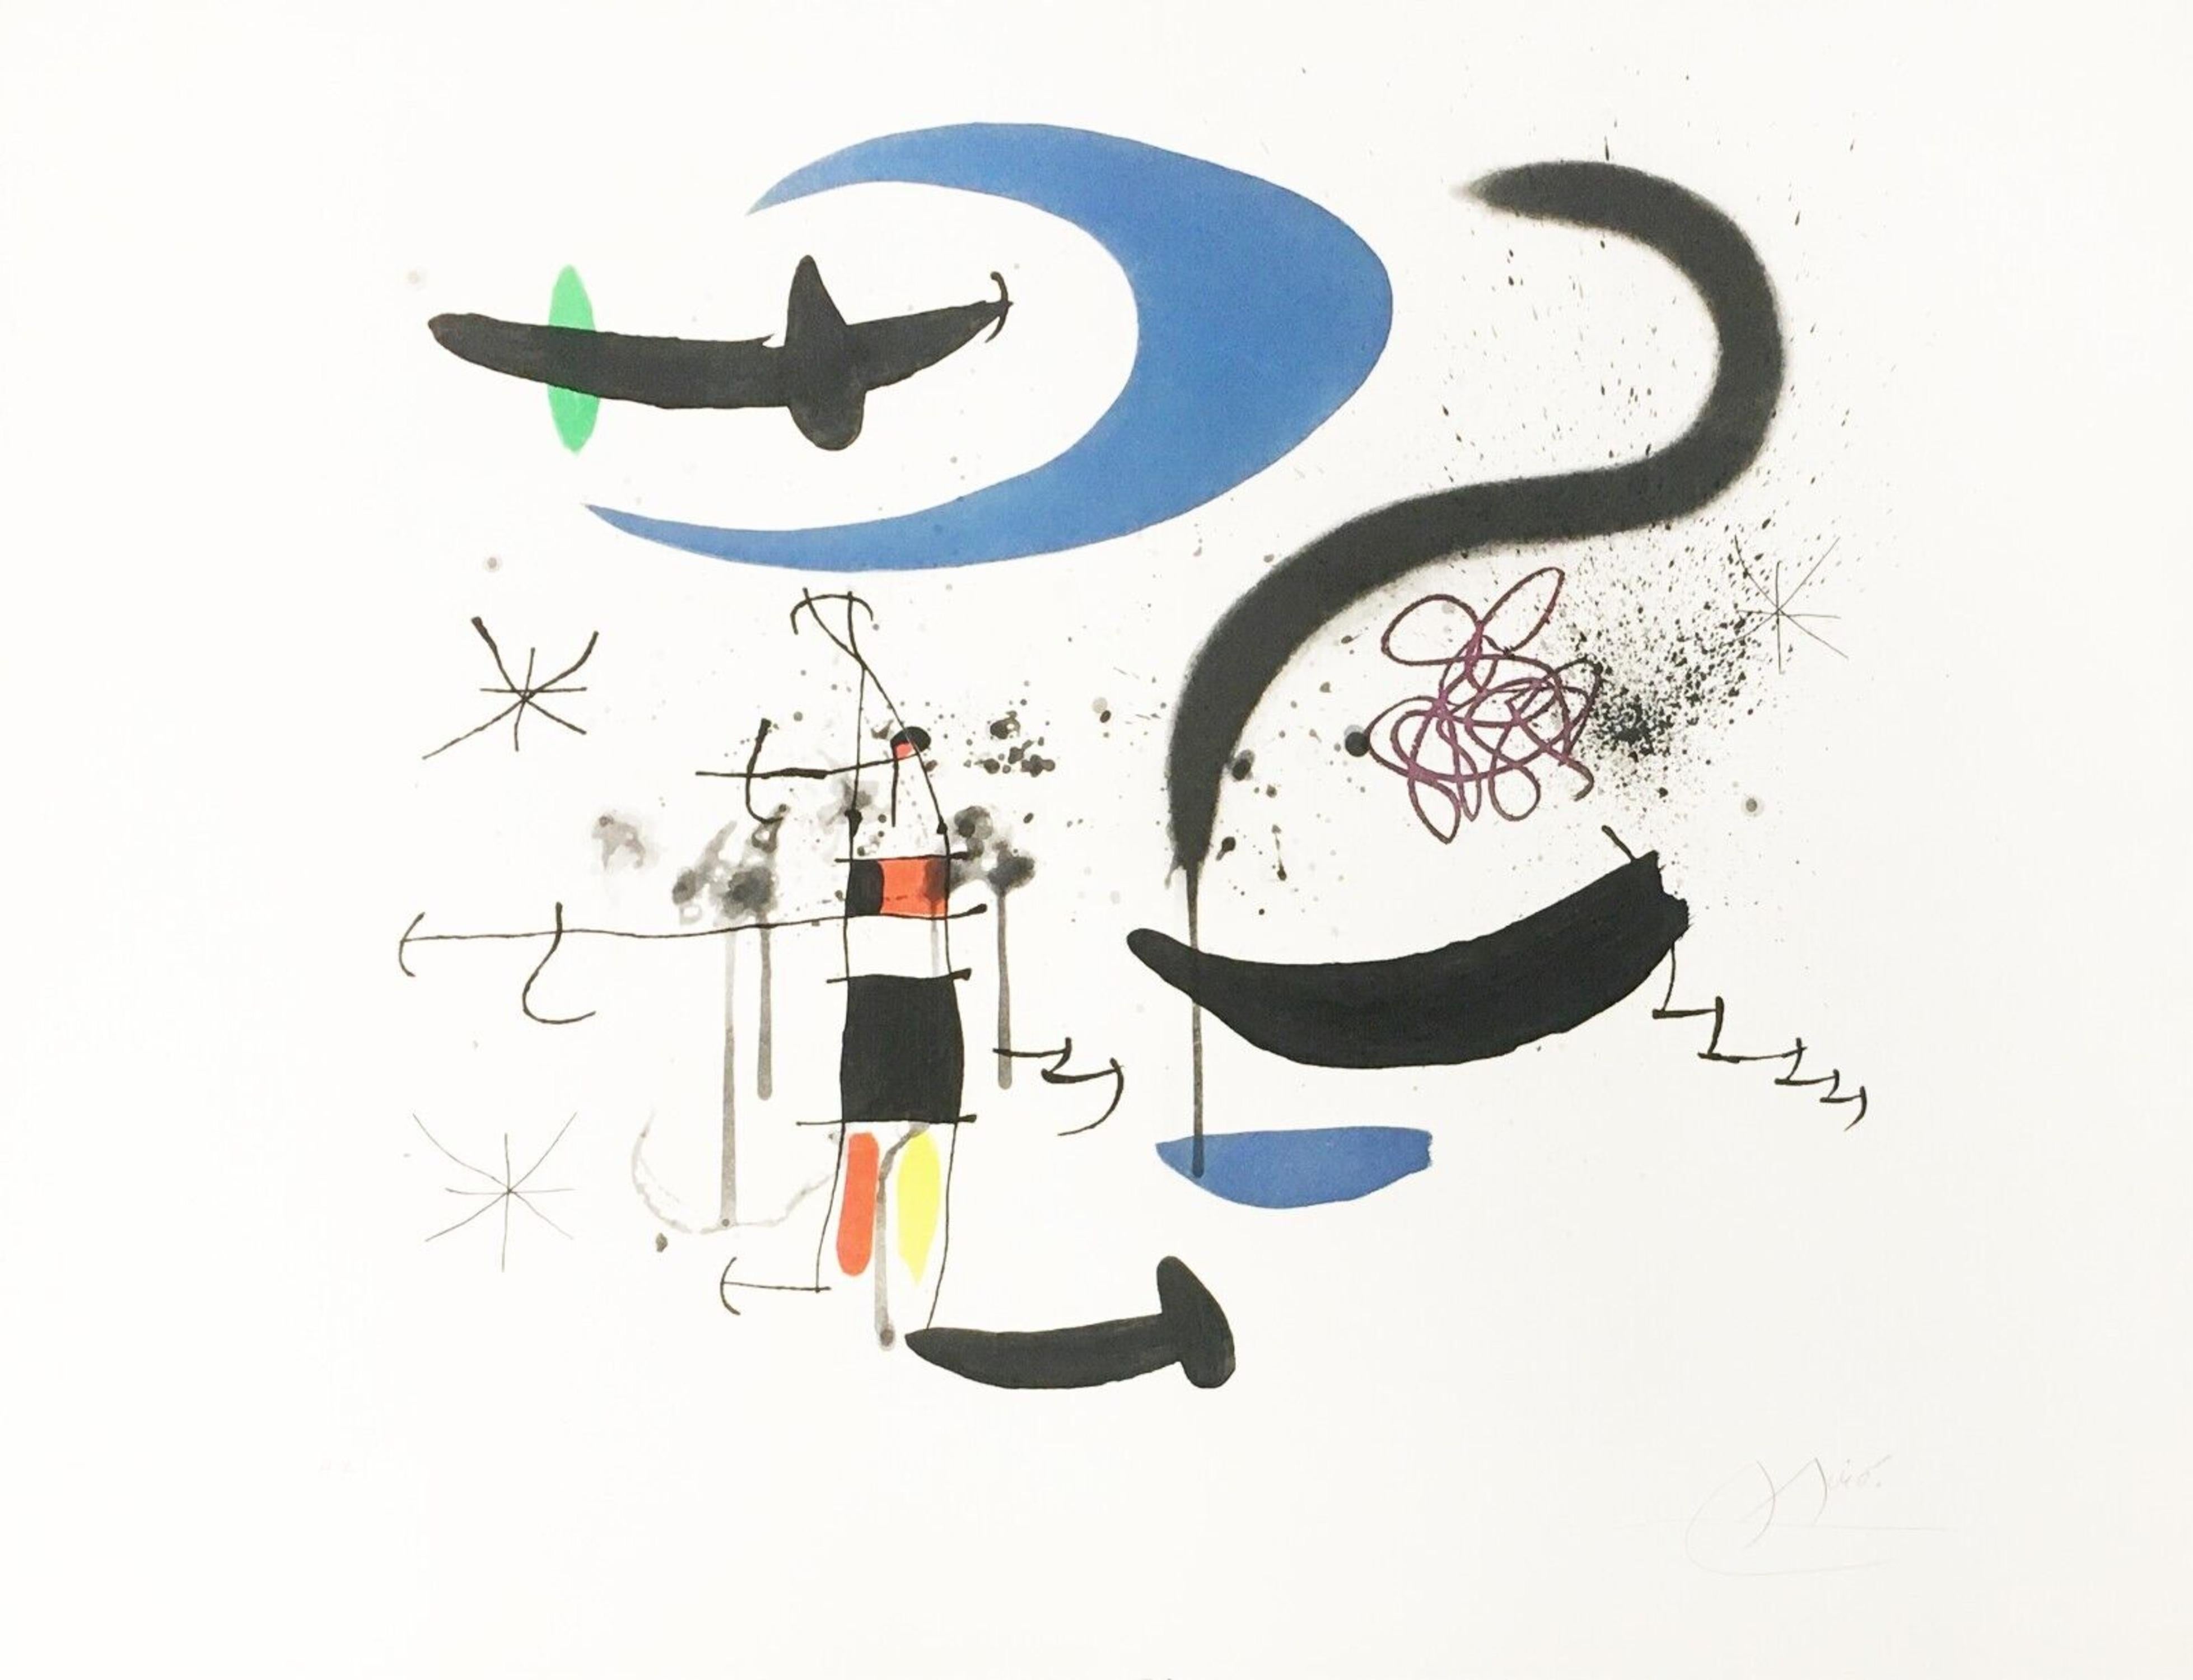 L'escalier de la Nuit - Print by Joan Miró